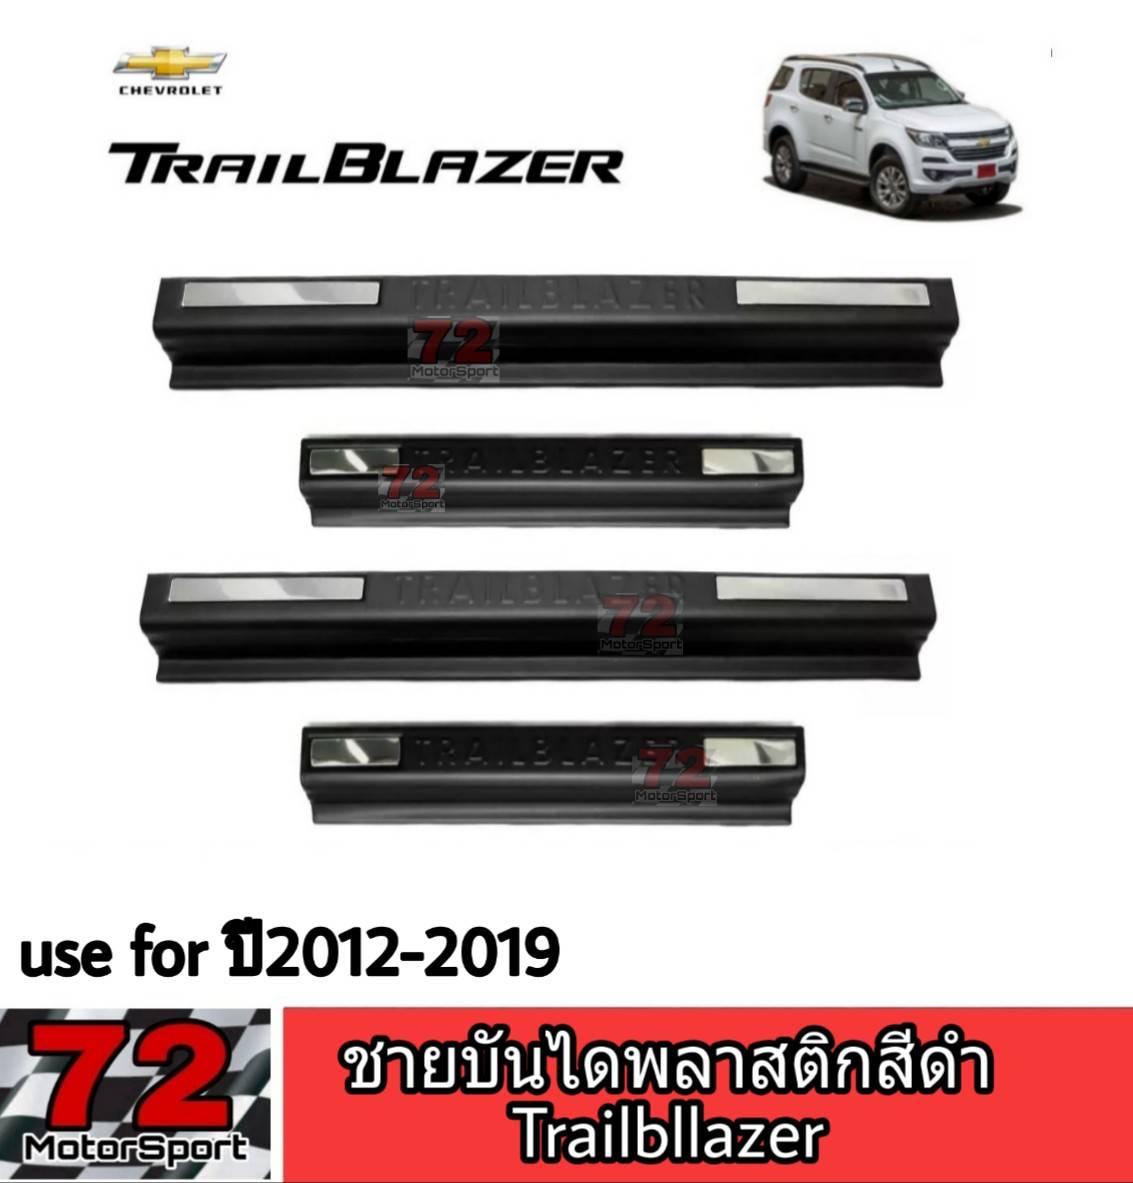 Chevrolet Trailblazer ชายบันไดพลาสติกสีดำ Trailblazer 2012-2020 กันรอยชายบันได กันรอยข้างประตู กันรอยขีดข่วน กันรอยชายประตู trailblazer chevrolet